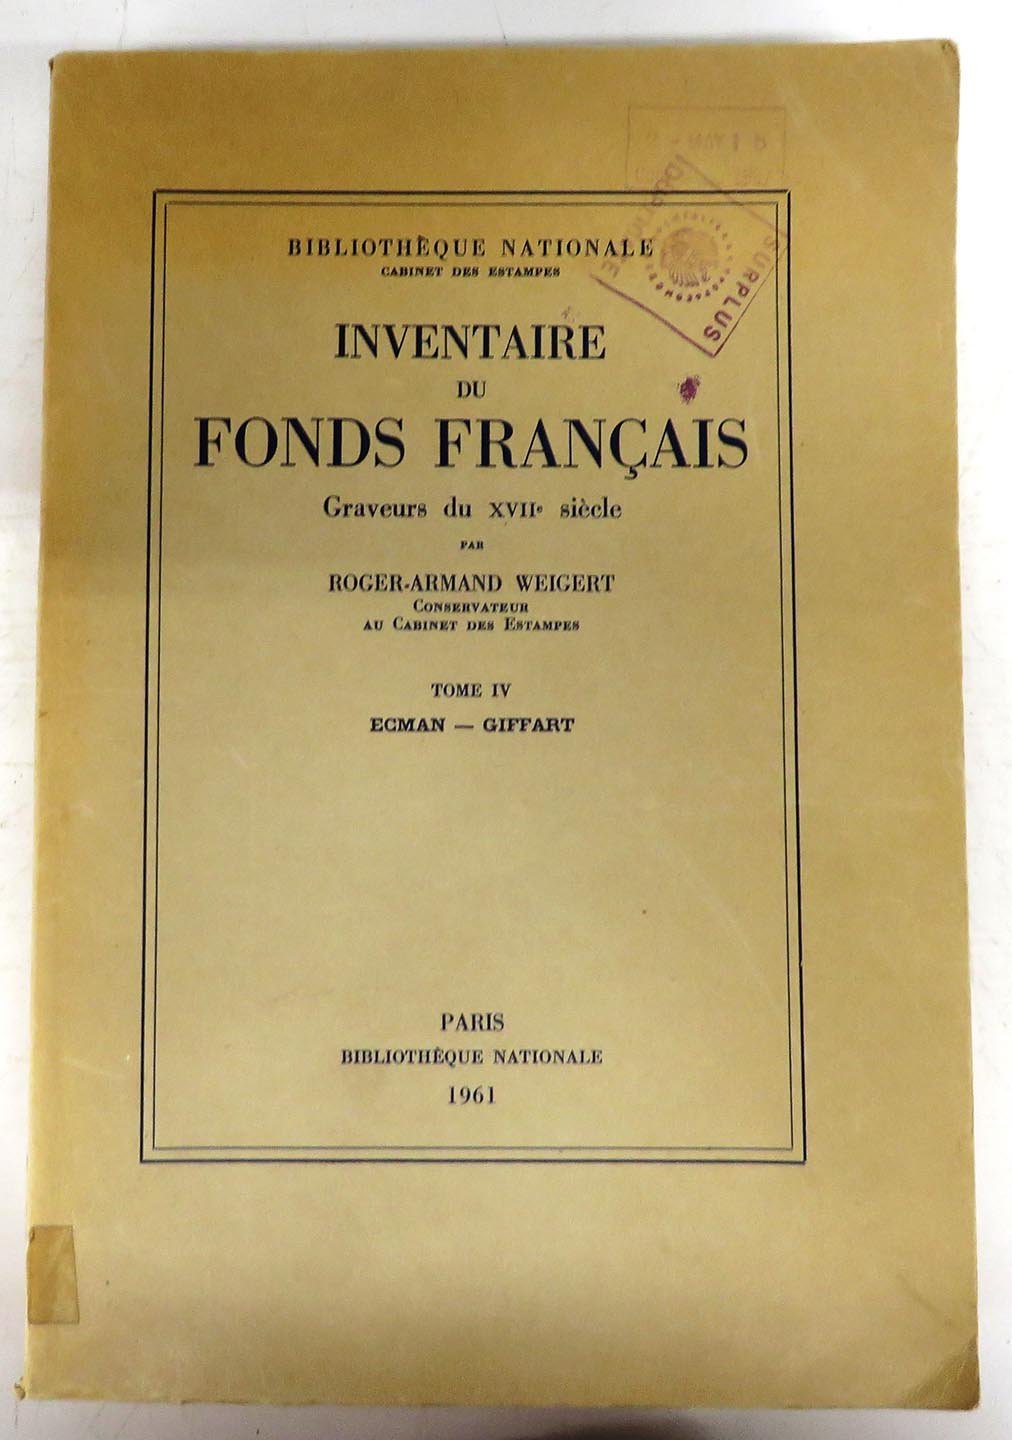 Inventaire du Fonds Francais. Graveurs du XVIIe Siècle Tome IV Ecman - Giffart